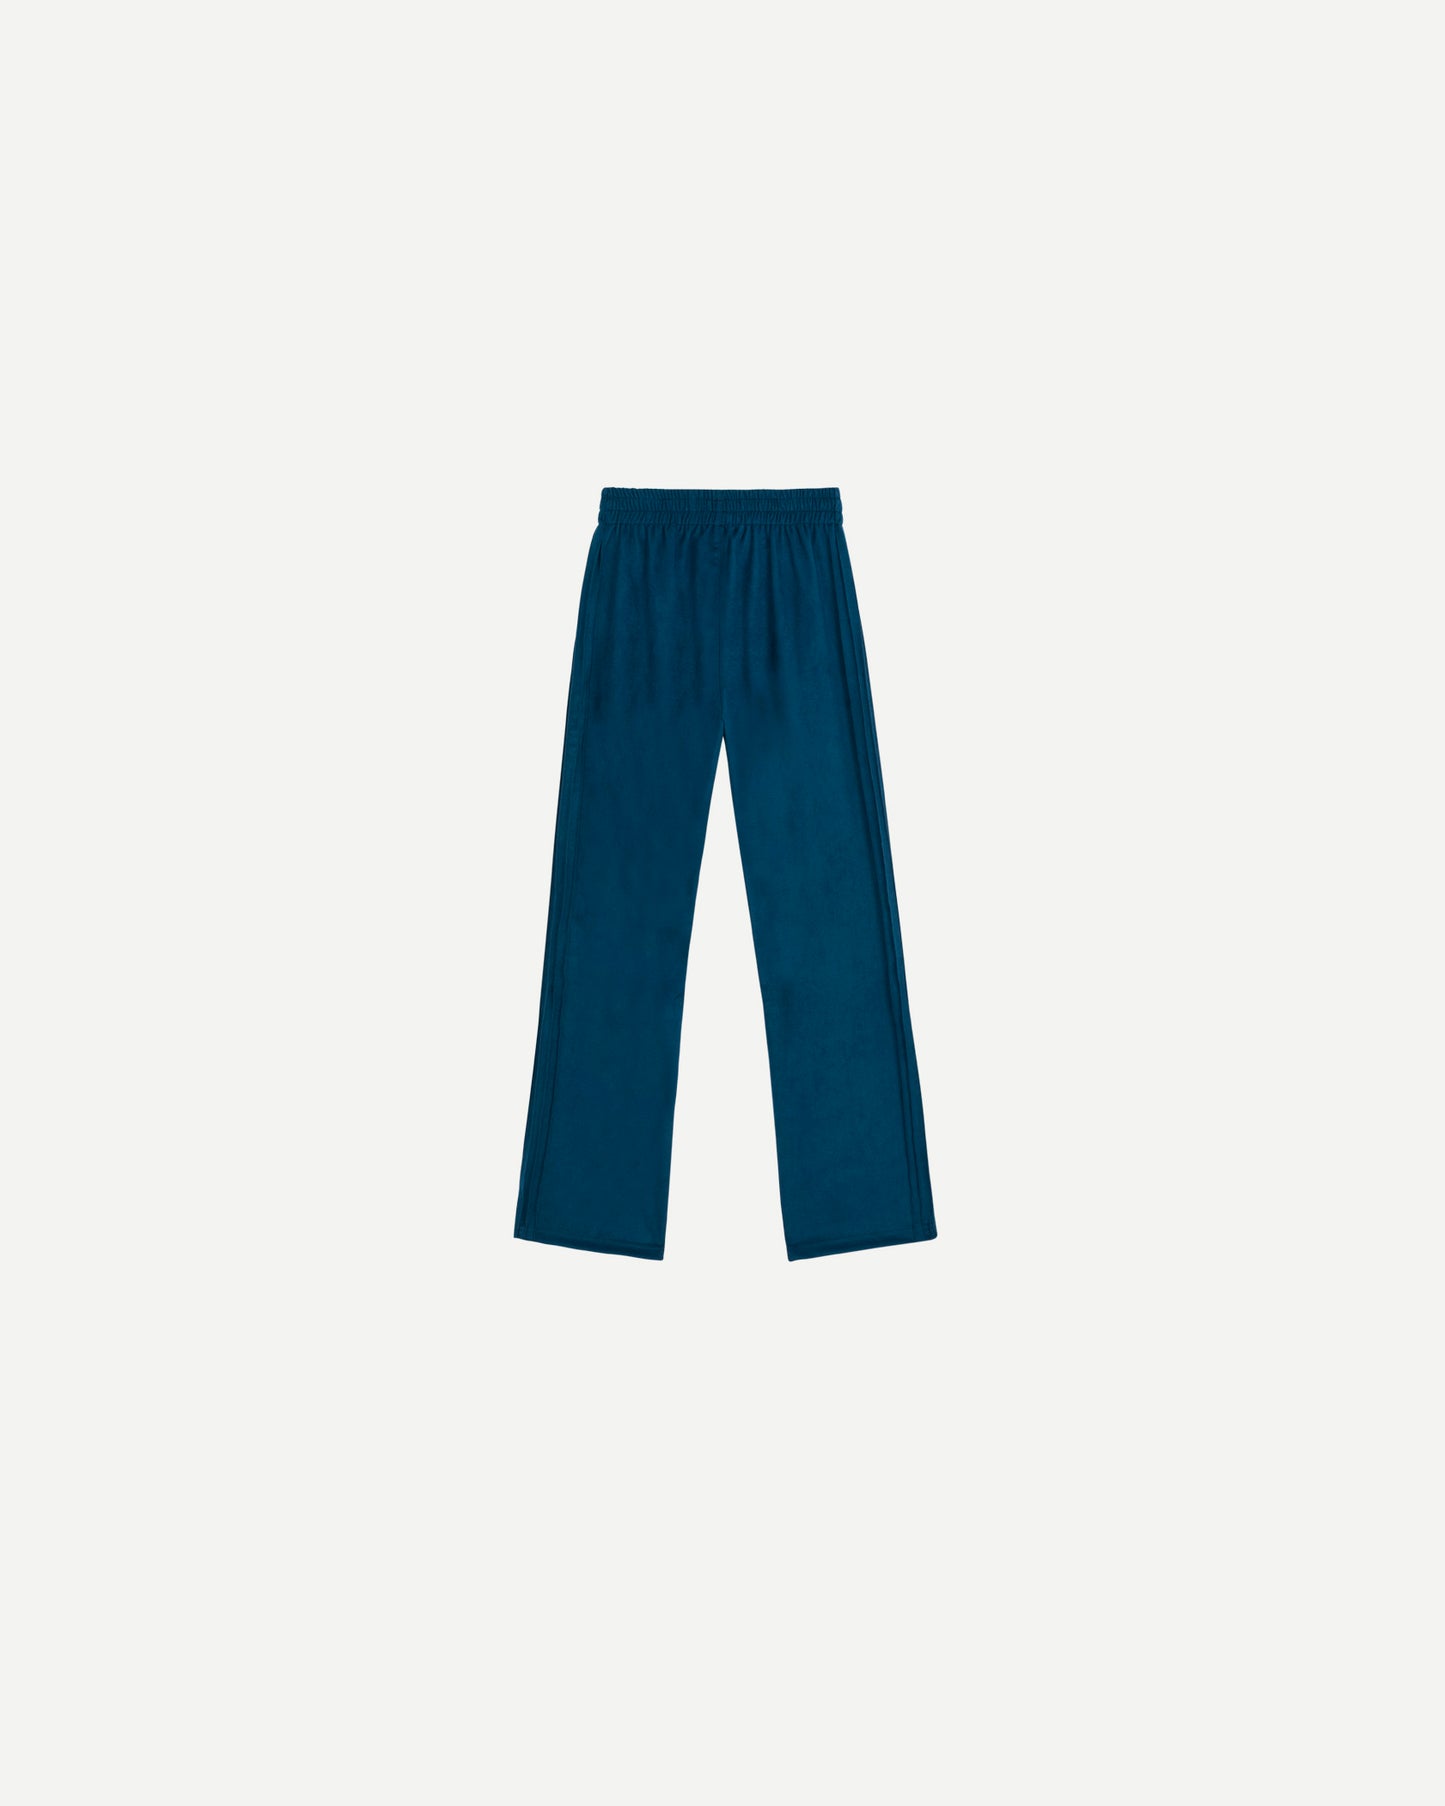 Pantalon de luxe pour homme Erevan, coupe droite, ceinture élastique, cinq nervures côtés, en nubuck, fabriquée en france